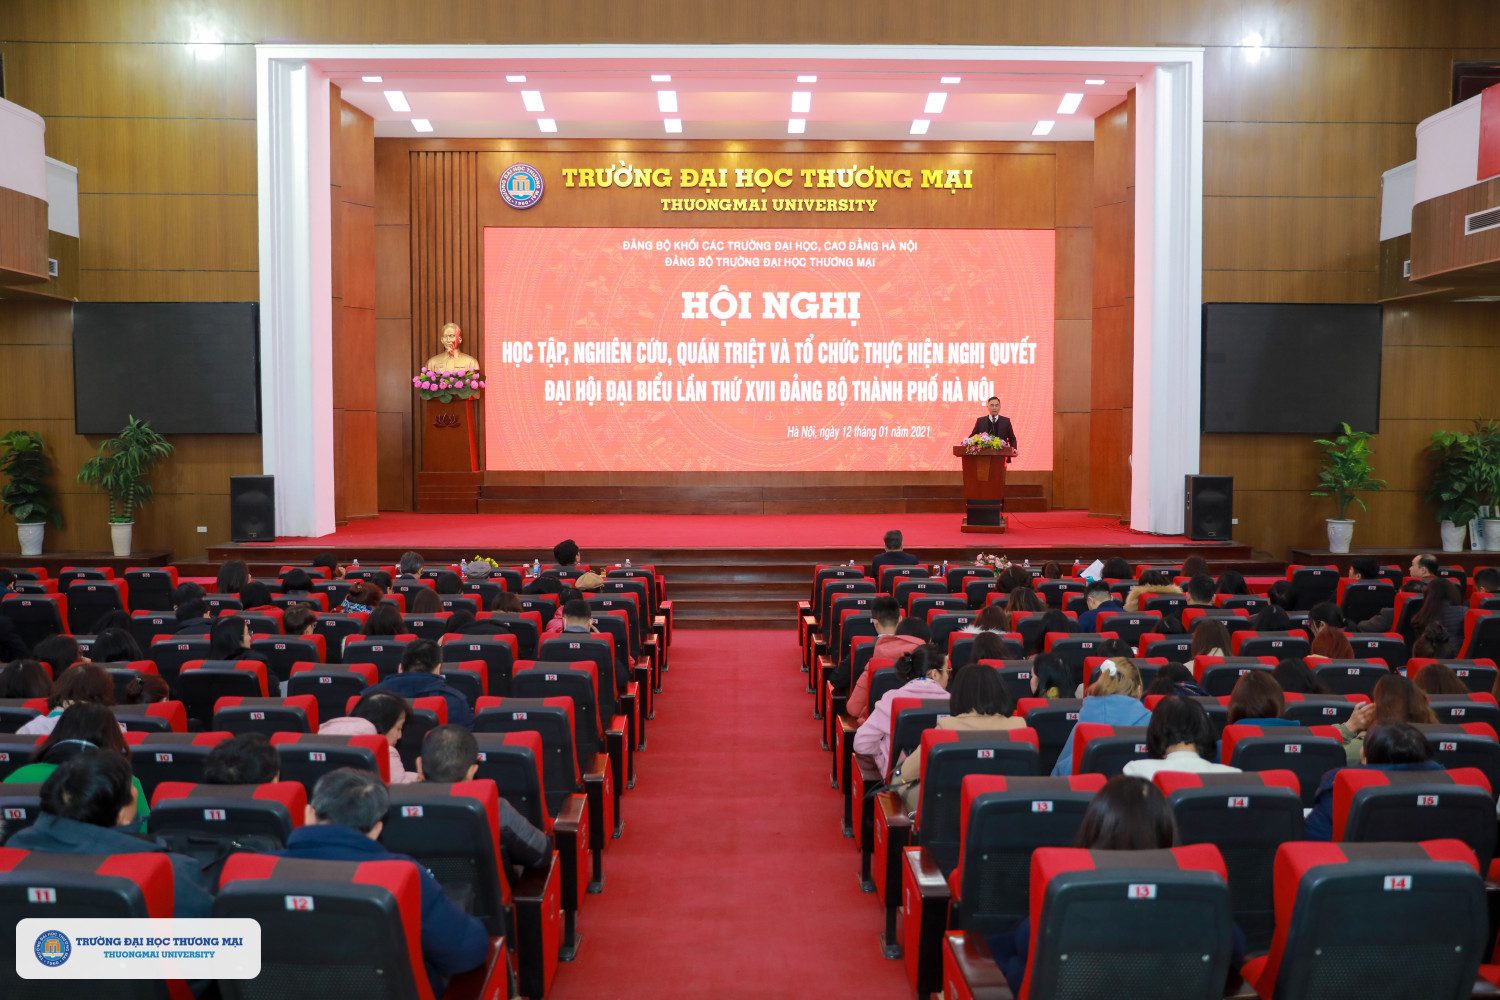 Hội nghị học tập, nghiên cứu, quán triệt và tổ chức thực hiện Nghị quyết Đại hội Đại biểu lần thứ XVII Đảng bộ thành phố Hà Nội